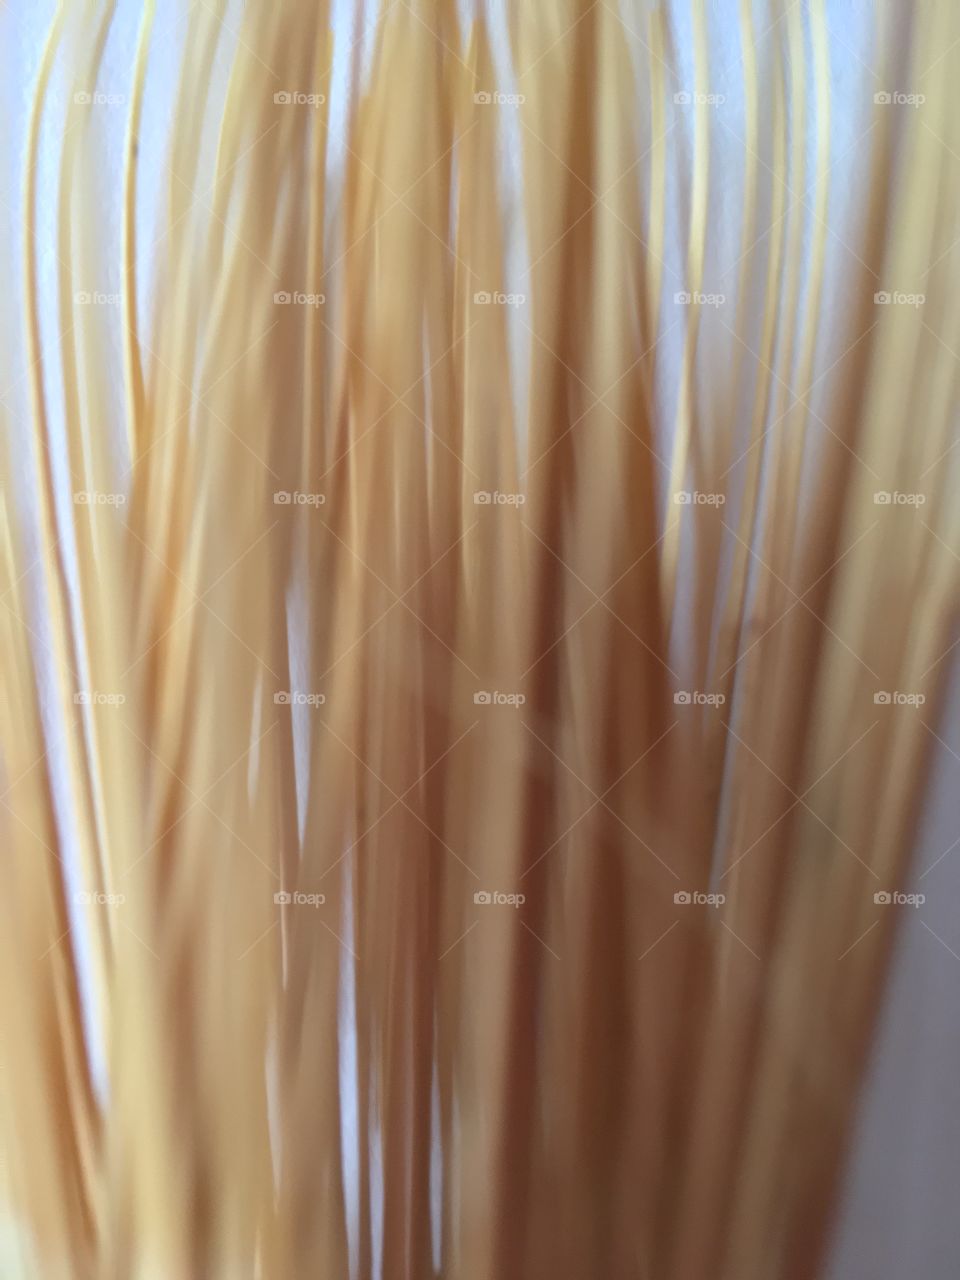 Close up of bamboo matcha whisk